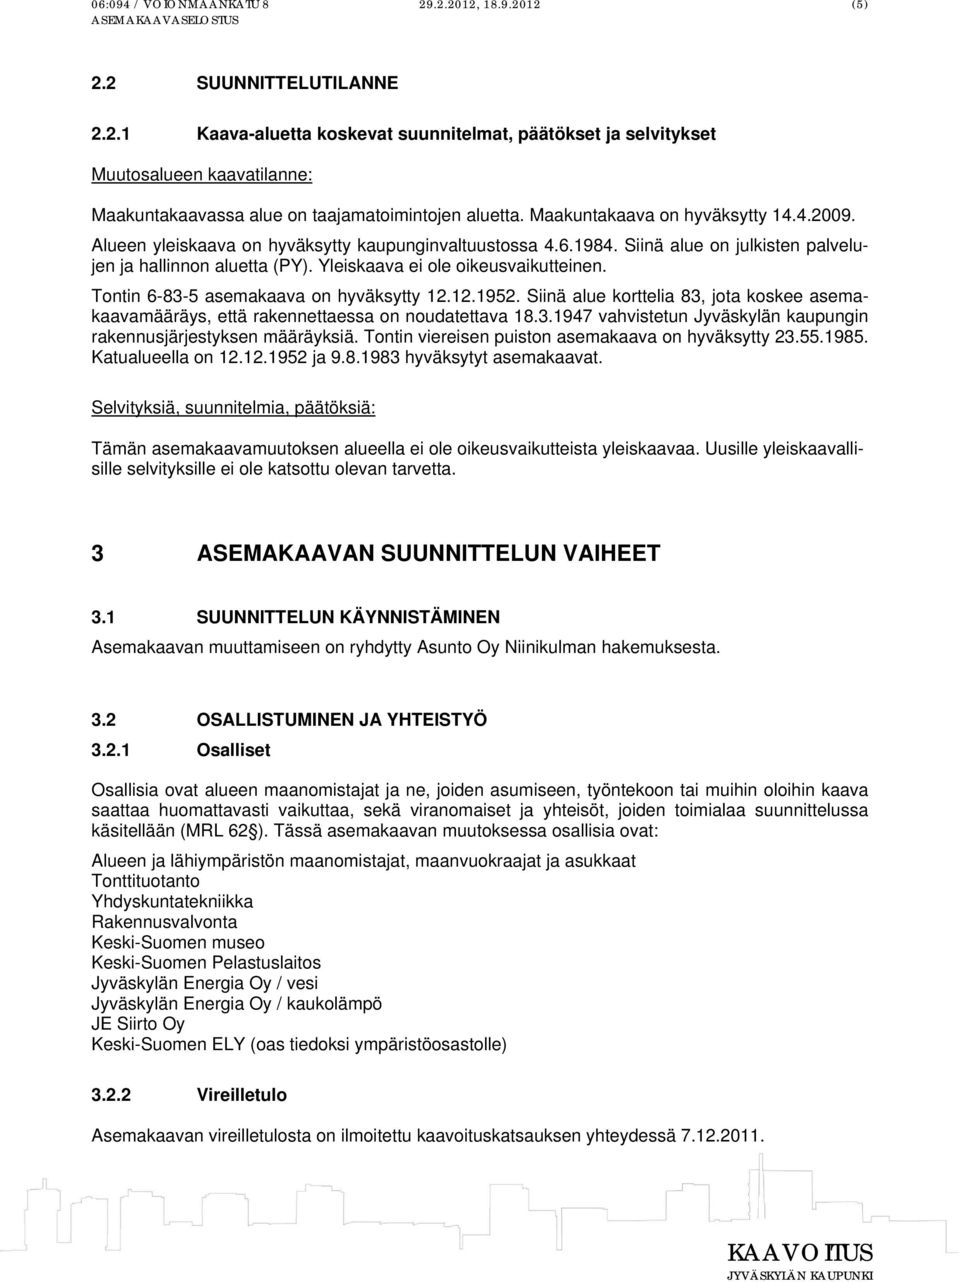 Yleiskaava ei ole oikeusvaikutteinen. Tontin 6-83-5 asemakaava on hyväksytty 12.12.1952. Siinä alue korttelia 83, jota koskee asemakaavamääräys, että rakennettaessa on noudatettava 18.3.1947 vahvistetun Jyväskylän kaupungin rakennusjärjestyksen määräyksiä.